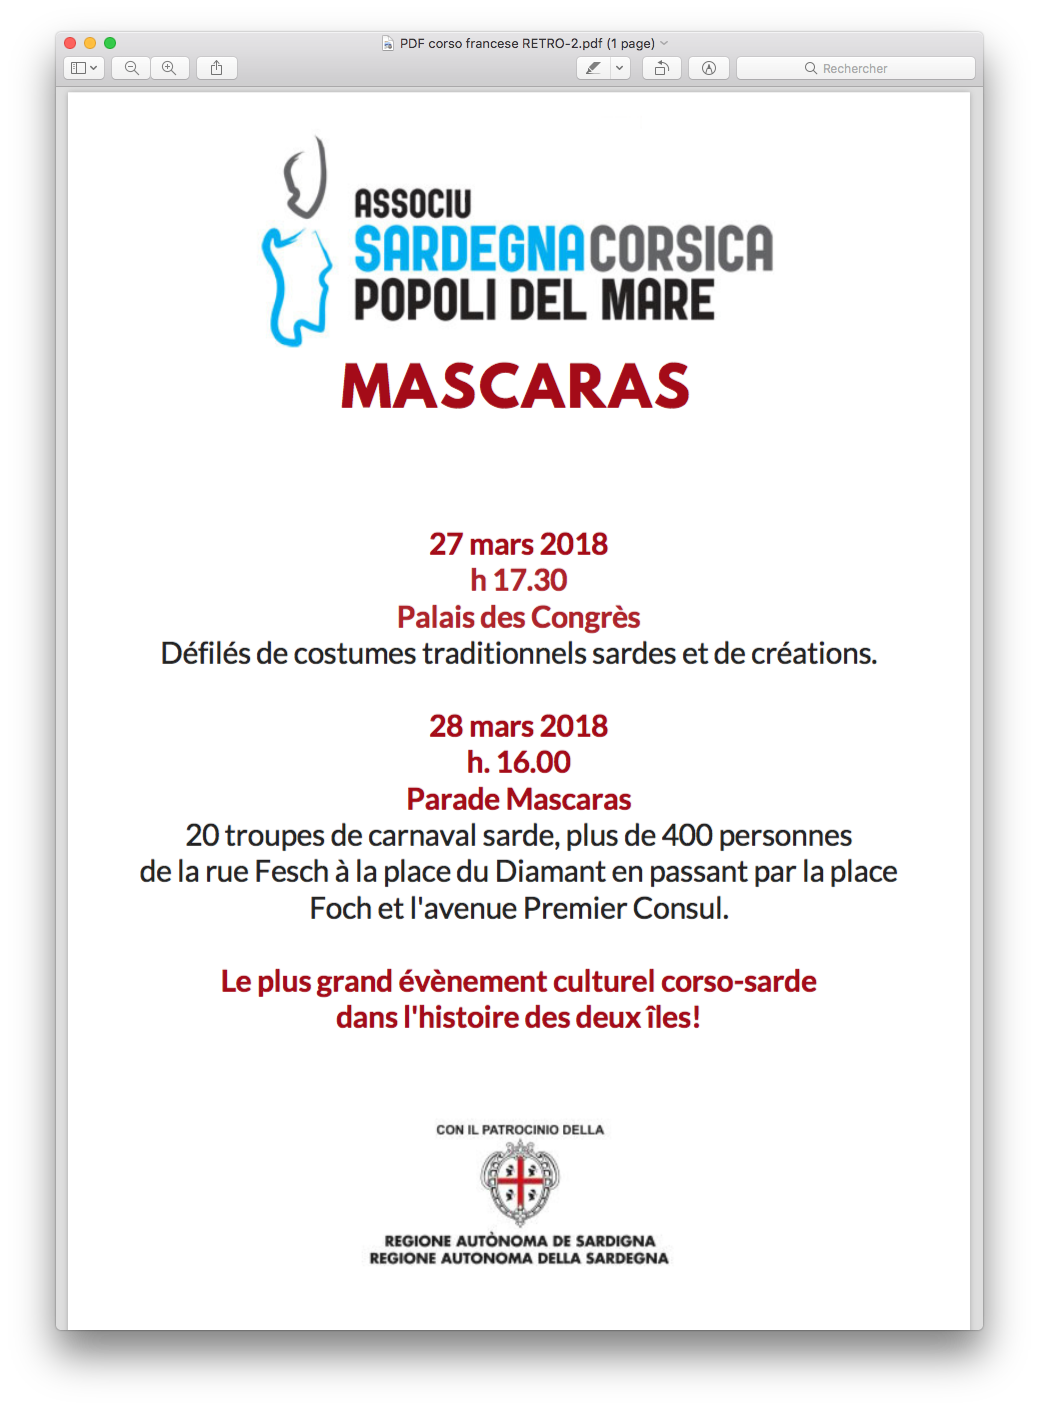 Mascaras : Le carnaval sarde à Ajaccio les 27 et 28 mars